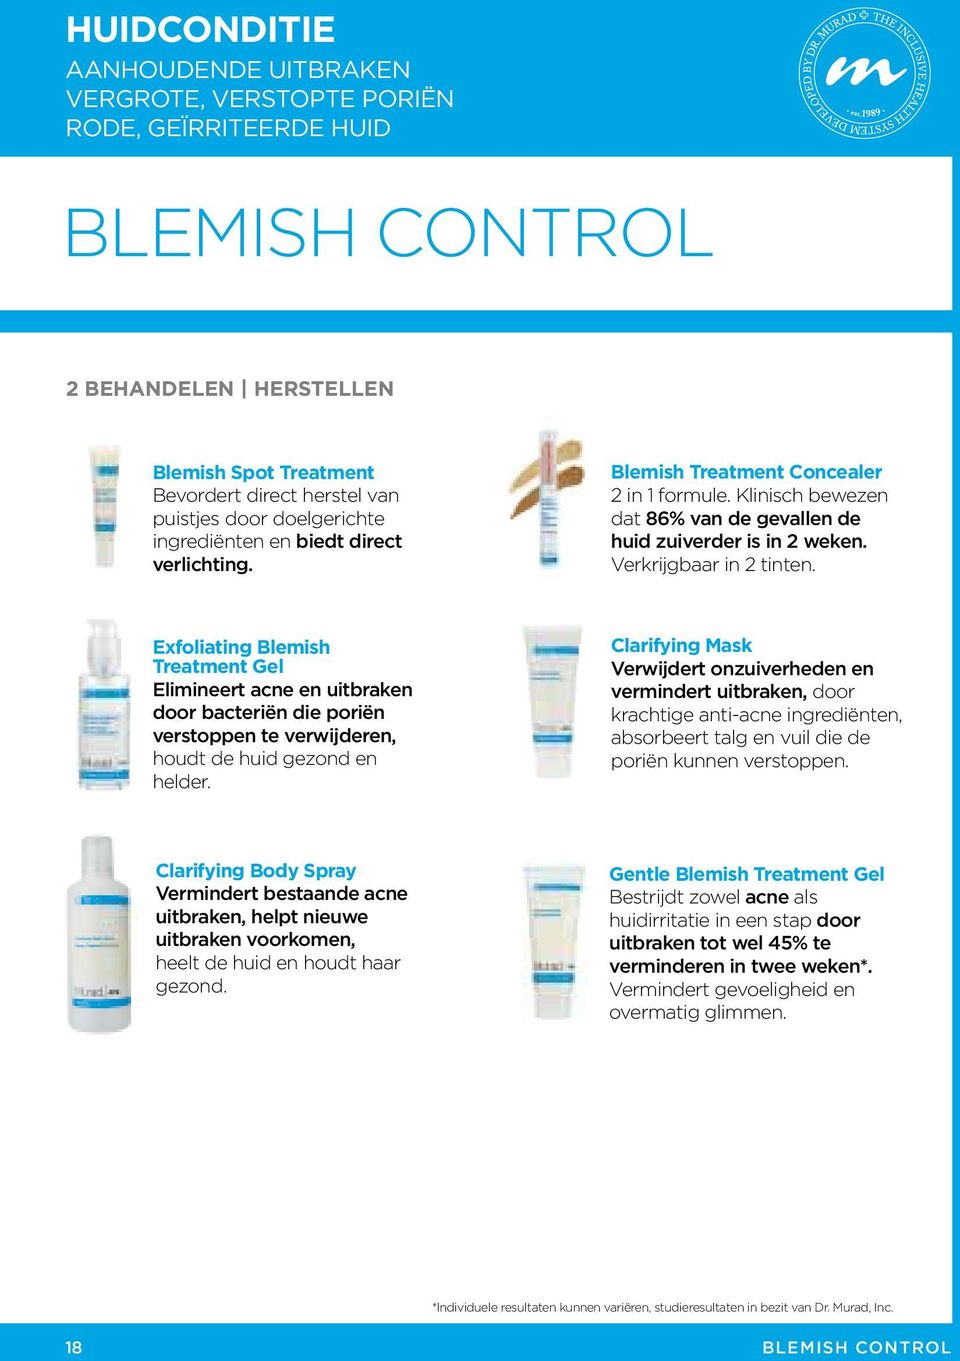 Exfoliating Blemish Treatment Gel Elimineert acne en uitbraken door bacteriën die poriën verstoppen te verwijderen, houdt de huid gezond en helder.